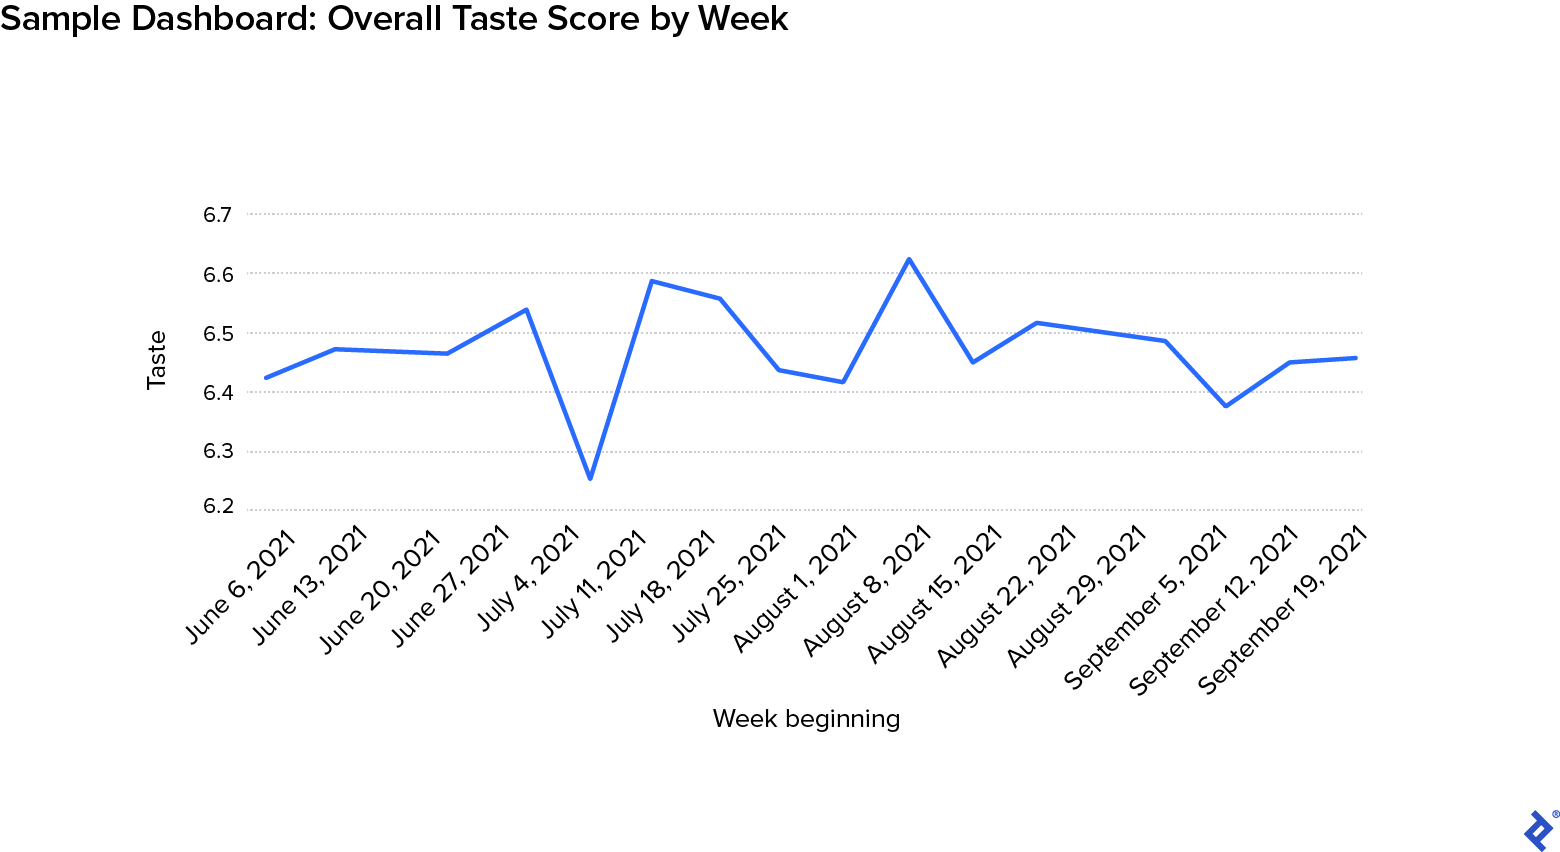 Un gráfico titulado Sample Dashboard: Overall Taste Score by Week muestra datos simulados.  En el eje vertical está la métrica del gusto, que va de 6,2 a 6,7.  En el eje horizontal hay fechas que representan semanas, que van desde el 6 de junio de 2021 hasta el 19 de septiembre de 2021. Los puntos de datos trazados son relativamente consistentes, entre 6.4 y 6.6, con la excepción de la semana del 4 de julio, para la cual hay un fuerte caída en la métrica de sabor trazada debajo de 6.3.